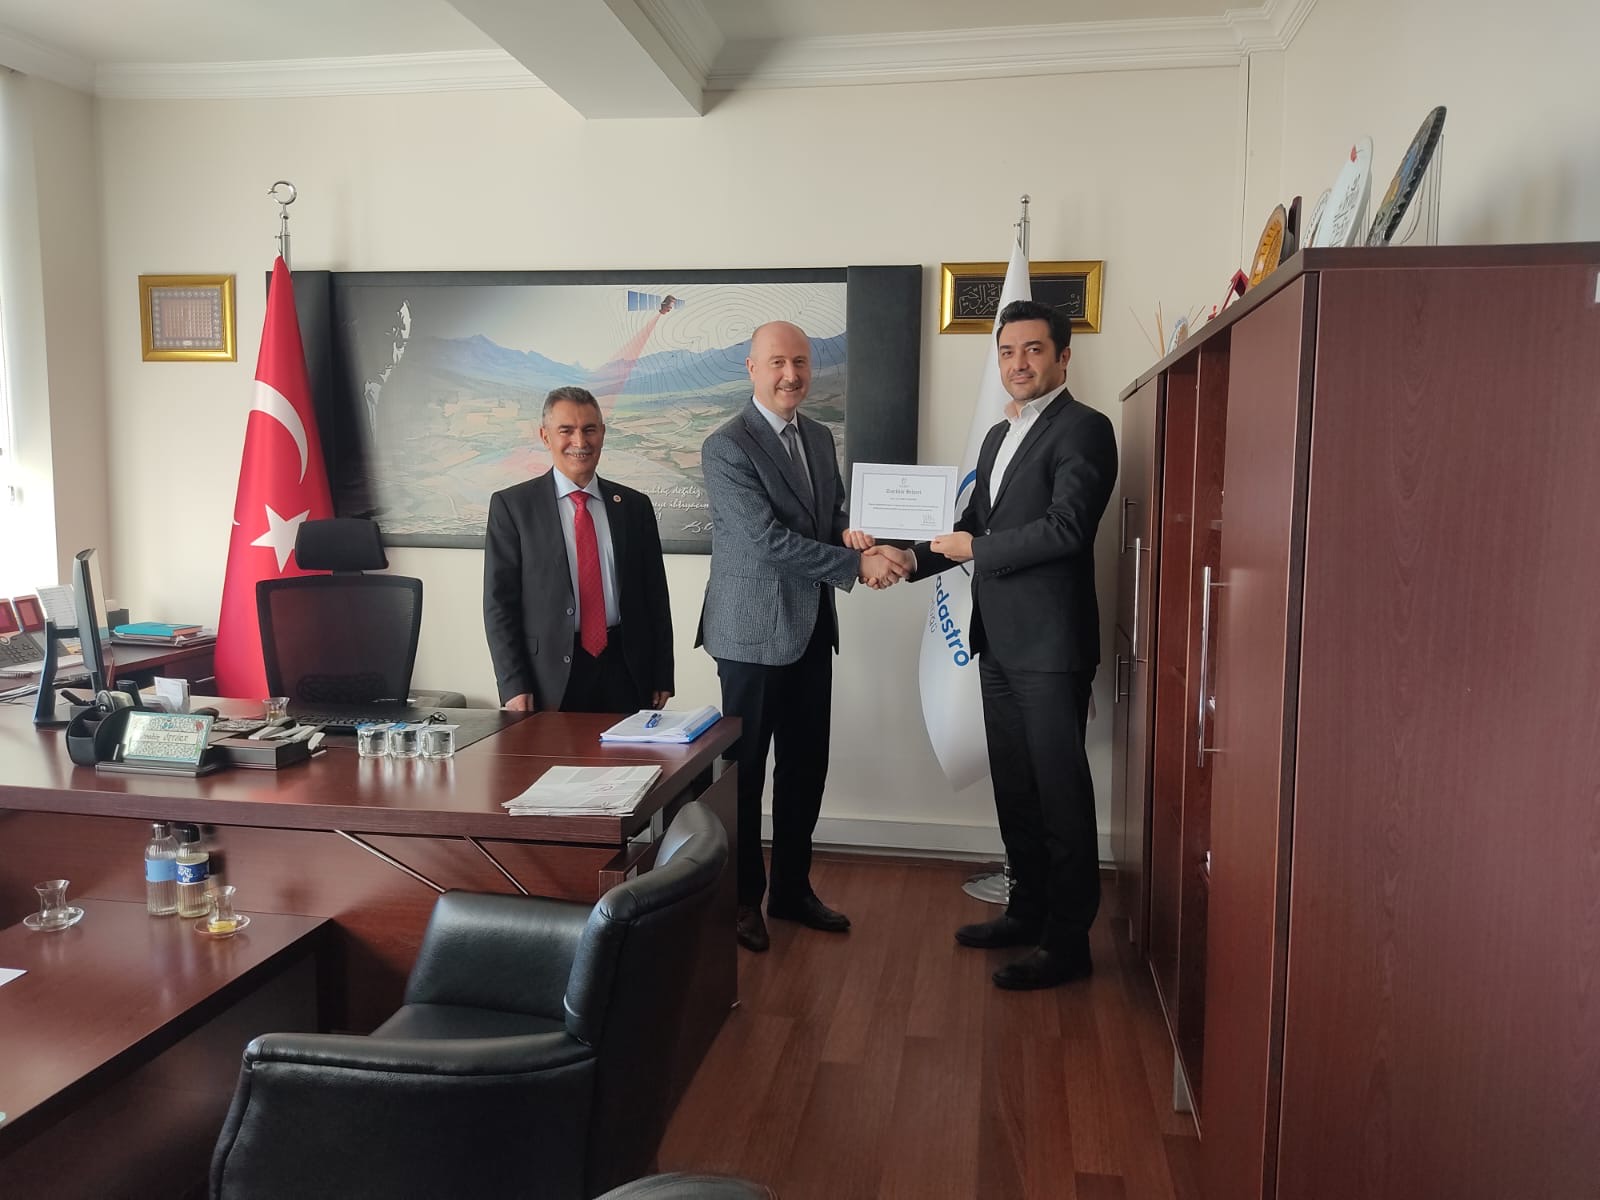 Personel Dairesi Başkanlığında görev yapan başarılı personele Personel Dairesi Başkanı İbrahim ÖZTÜRK tarafından Teşekkür Belgesi verilmiştir.